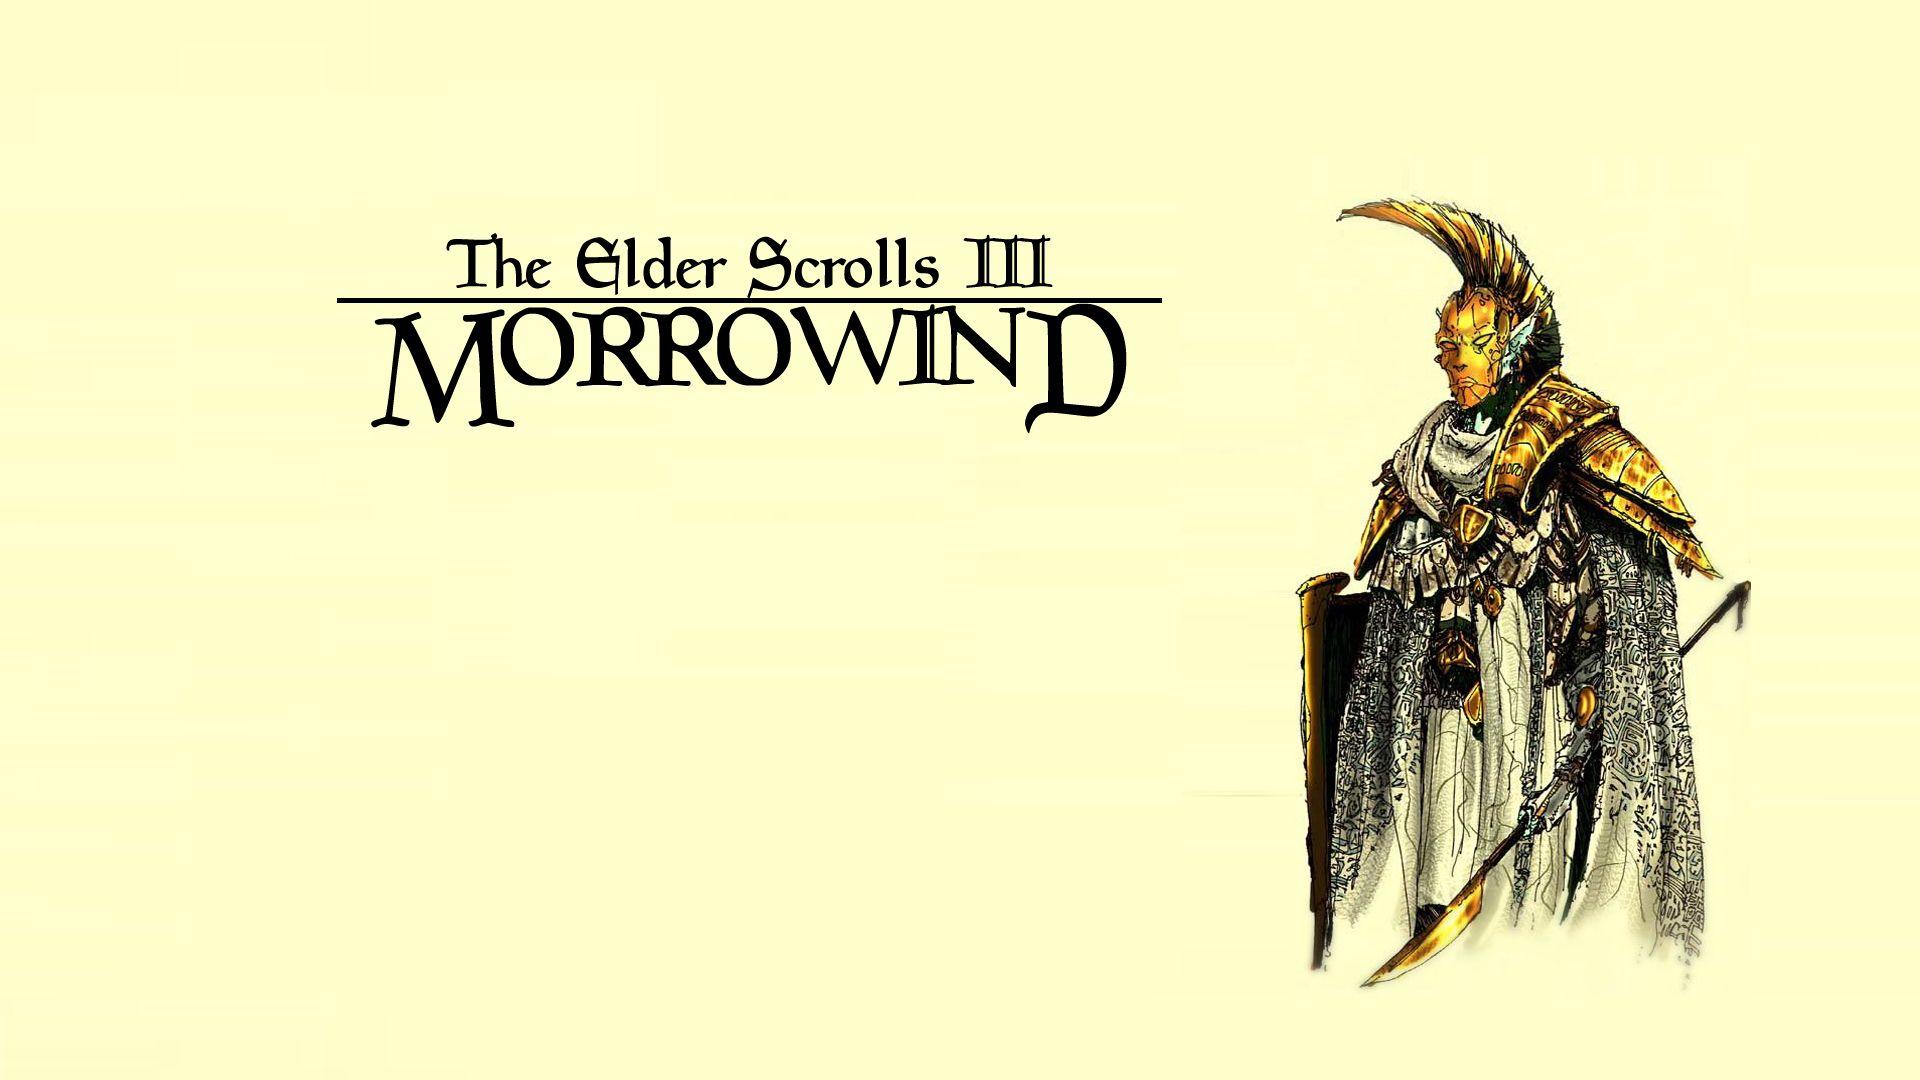 Morrowind wallpaper. The art of the elder scrolls